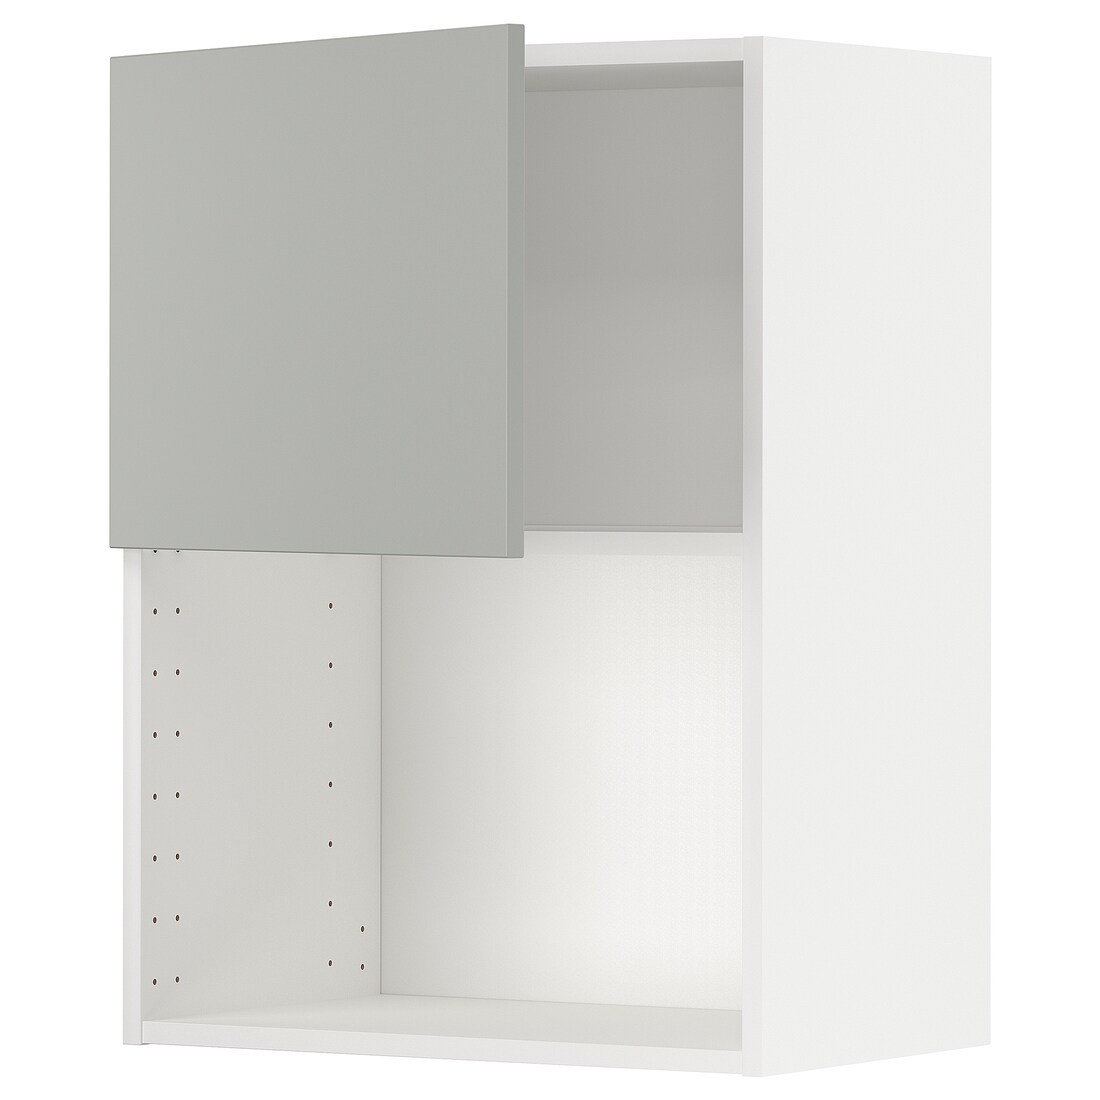 METOD Навесной шкаф для СВЧ-печи, белый / Хавсторп светло-серый, 60x80 см